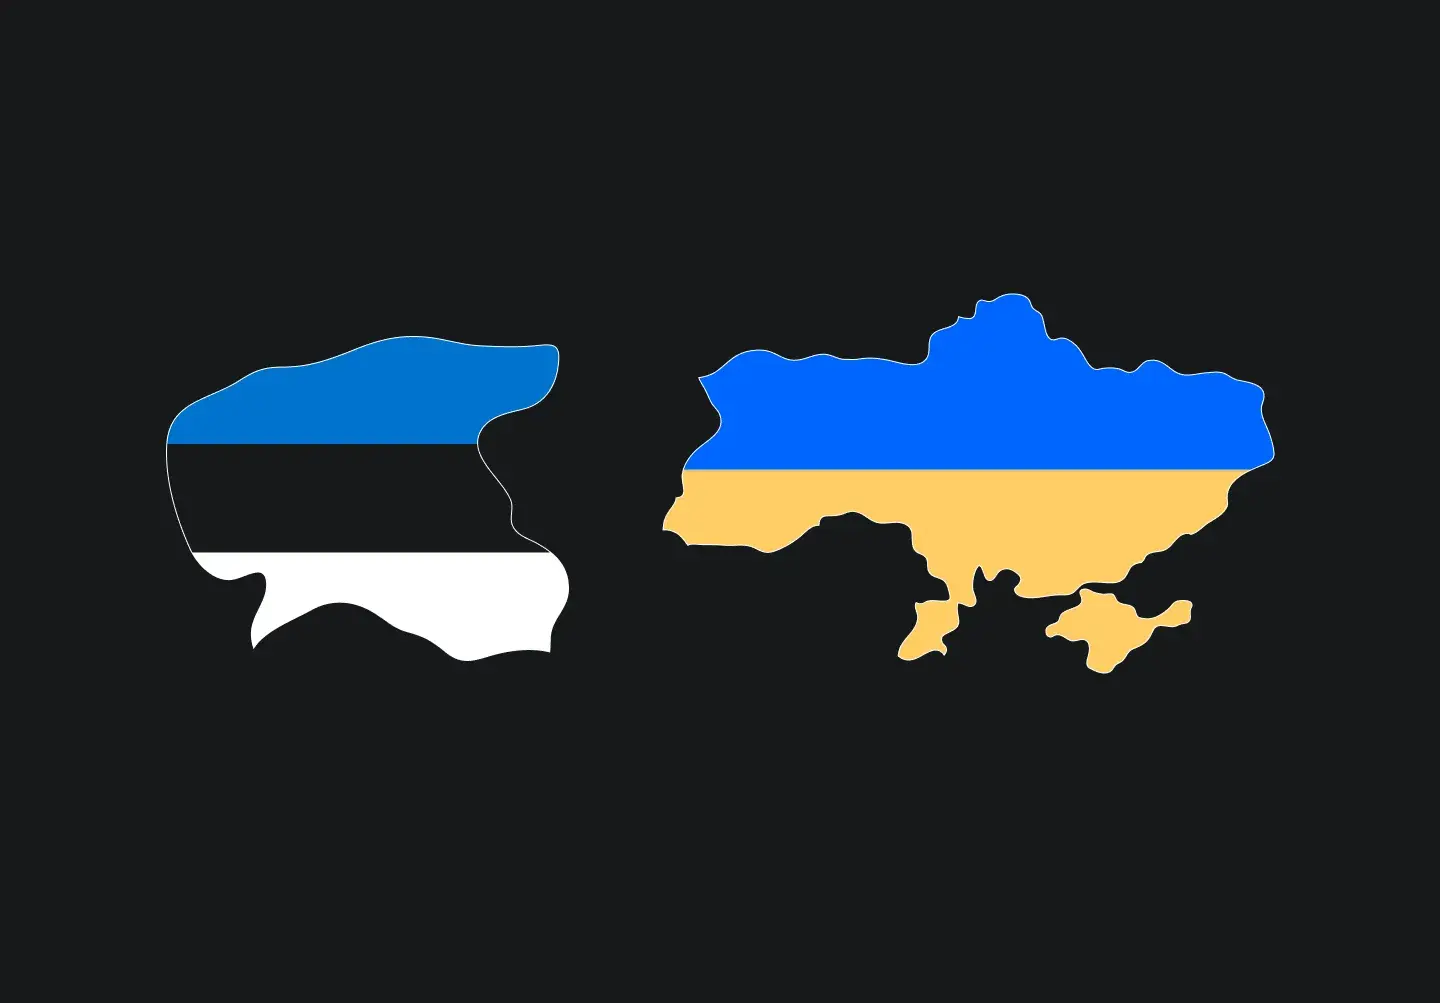 Estonia IT industry: Comparison with Ukraine devabit